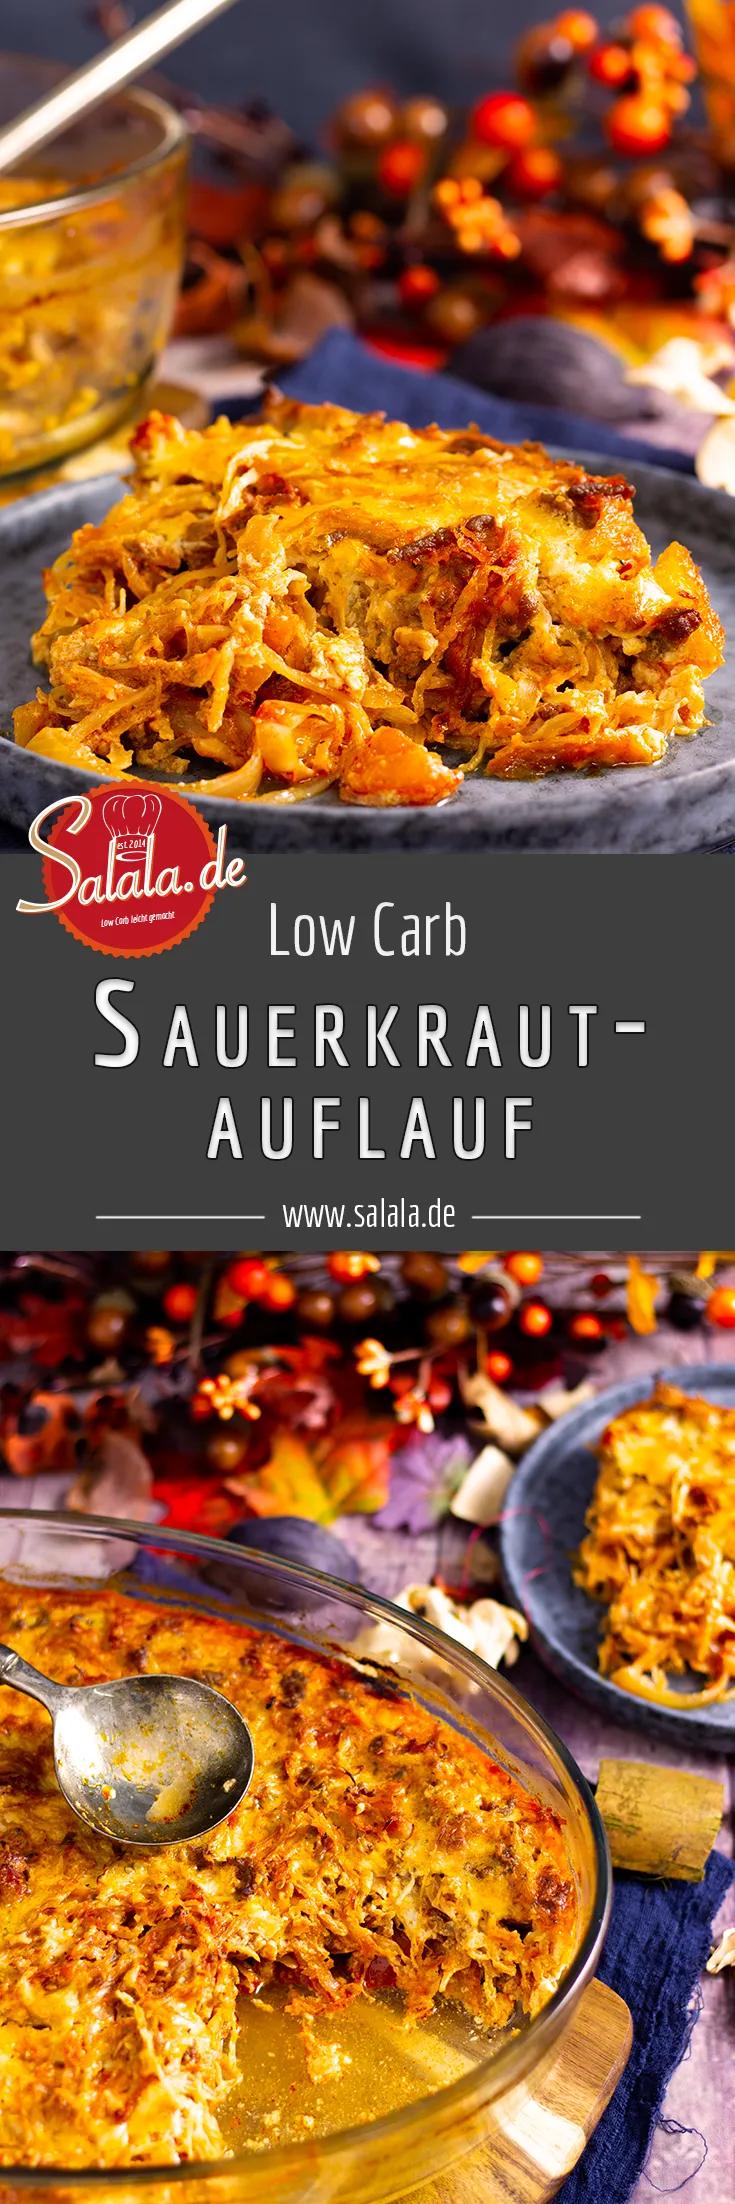 Sauerkrautauflauf mit Hackfleisch und Speck • salala.de | Rezept ...